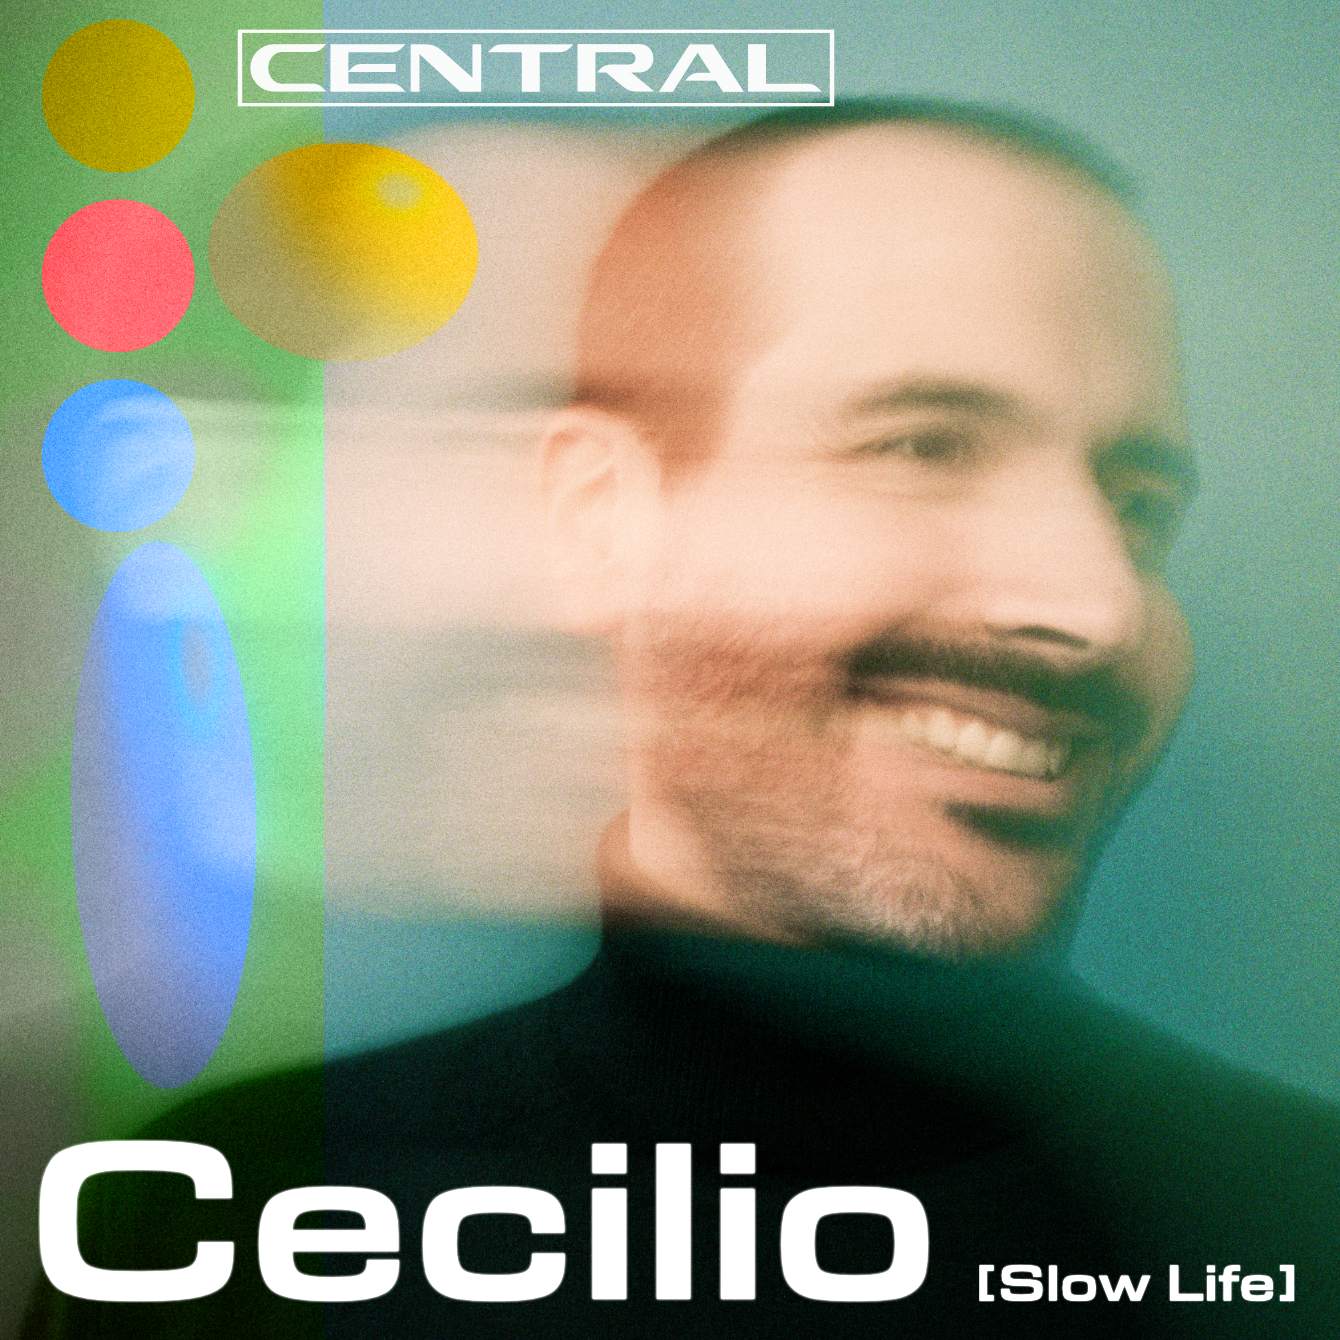 Central - Cecilio [Slow Life] - Página frontal